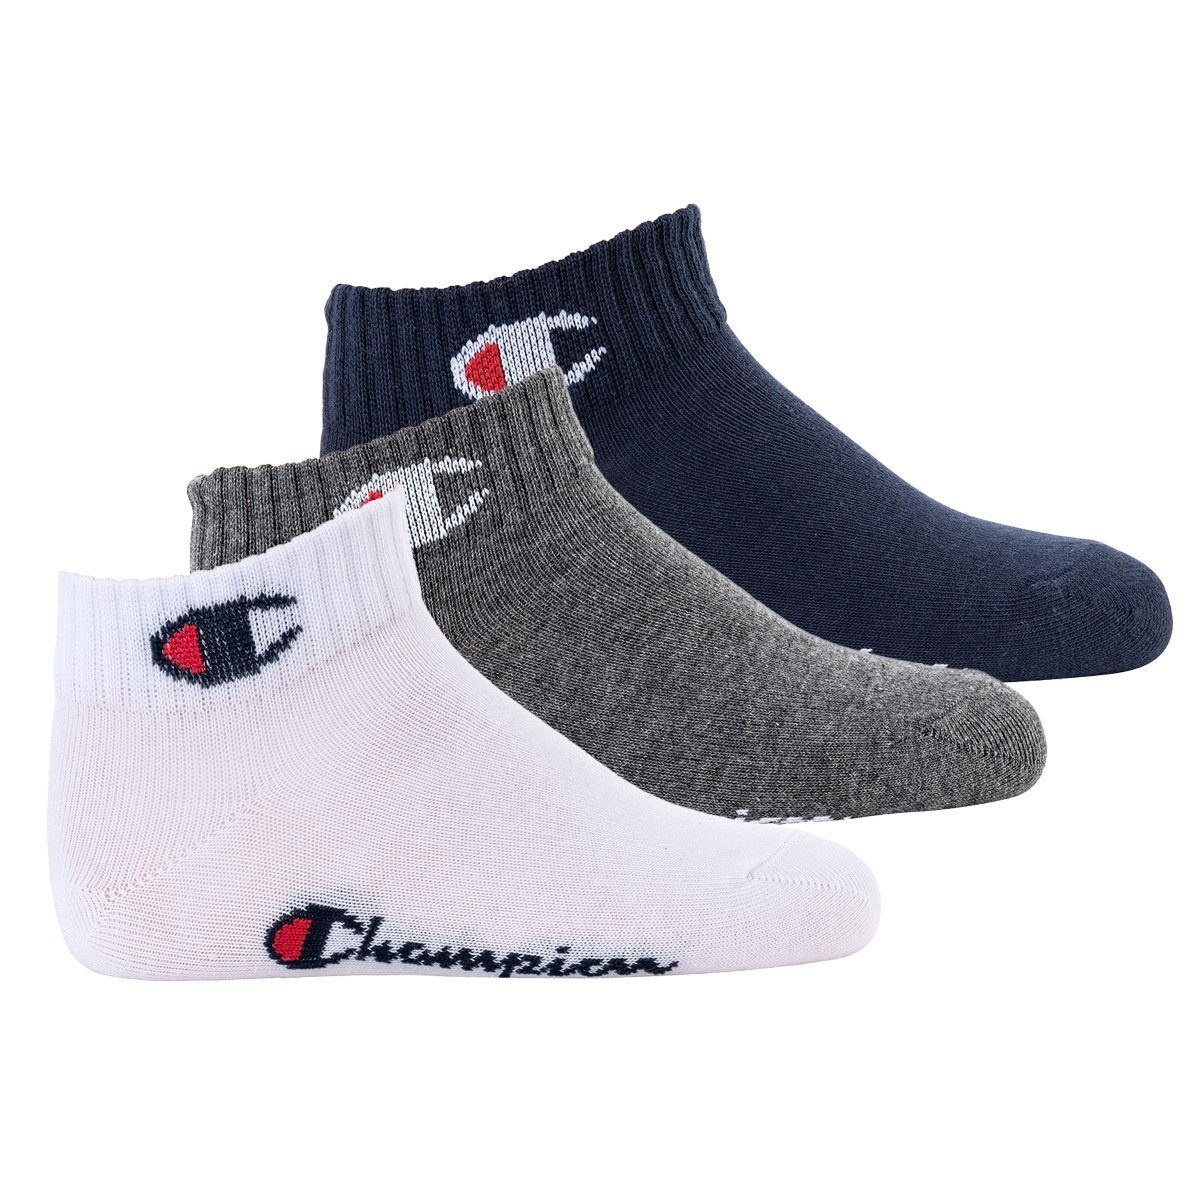 Champion Freizeitsocken Kinder Socken, 3er Pack- Quarter, einfarbig Blau/Weiß/Grau